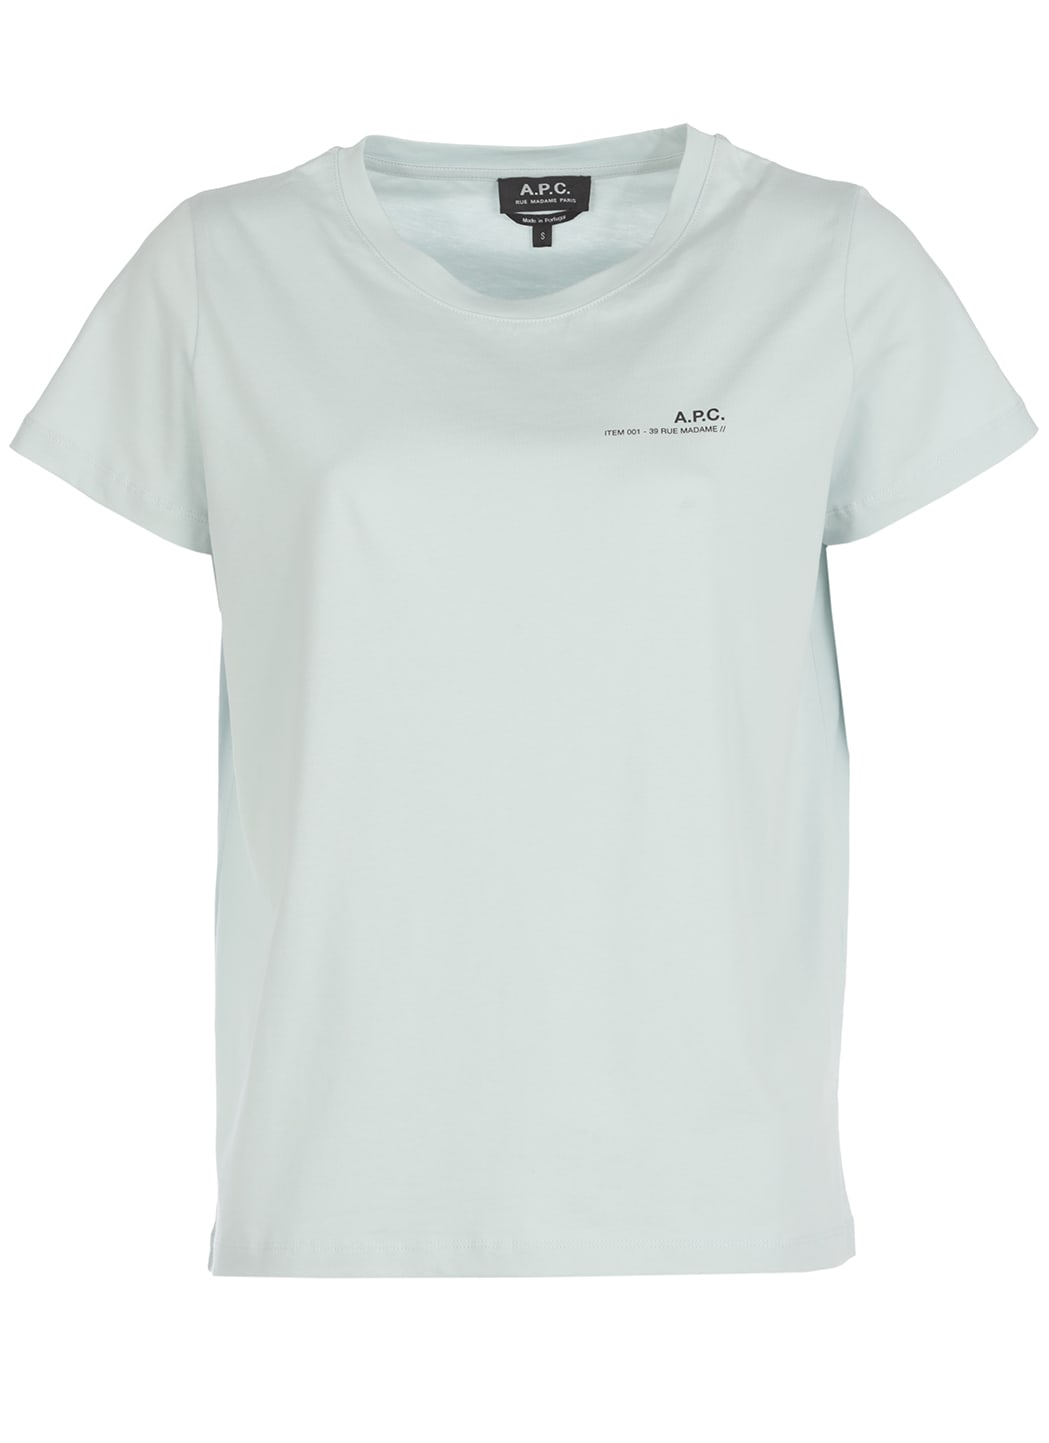 A.P.C. Cotton T-shirt